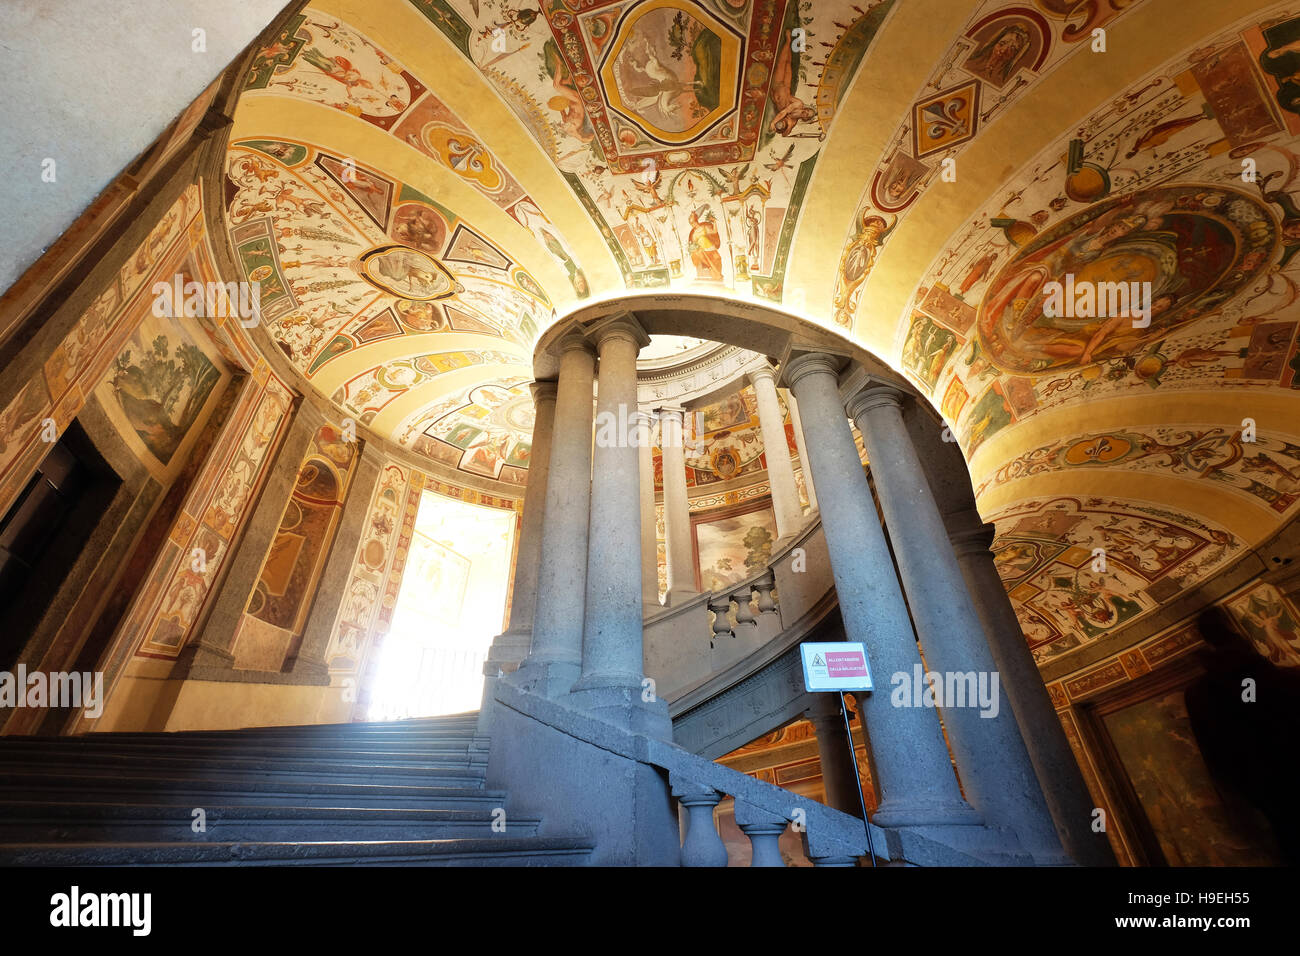 Escalier Royal,Palais Farnèse,Caprarola (Viterbo), Italie Banque D'Images